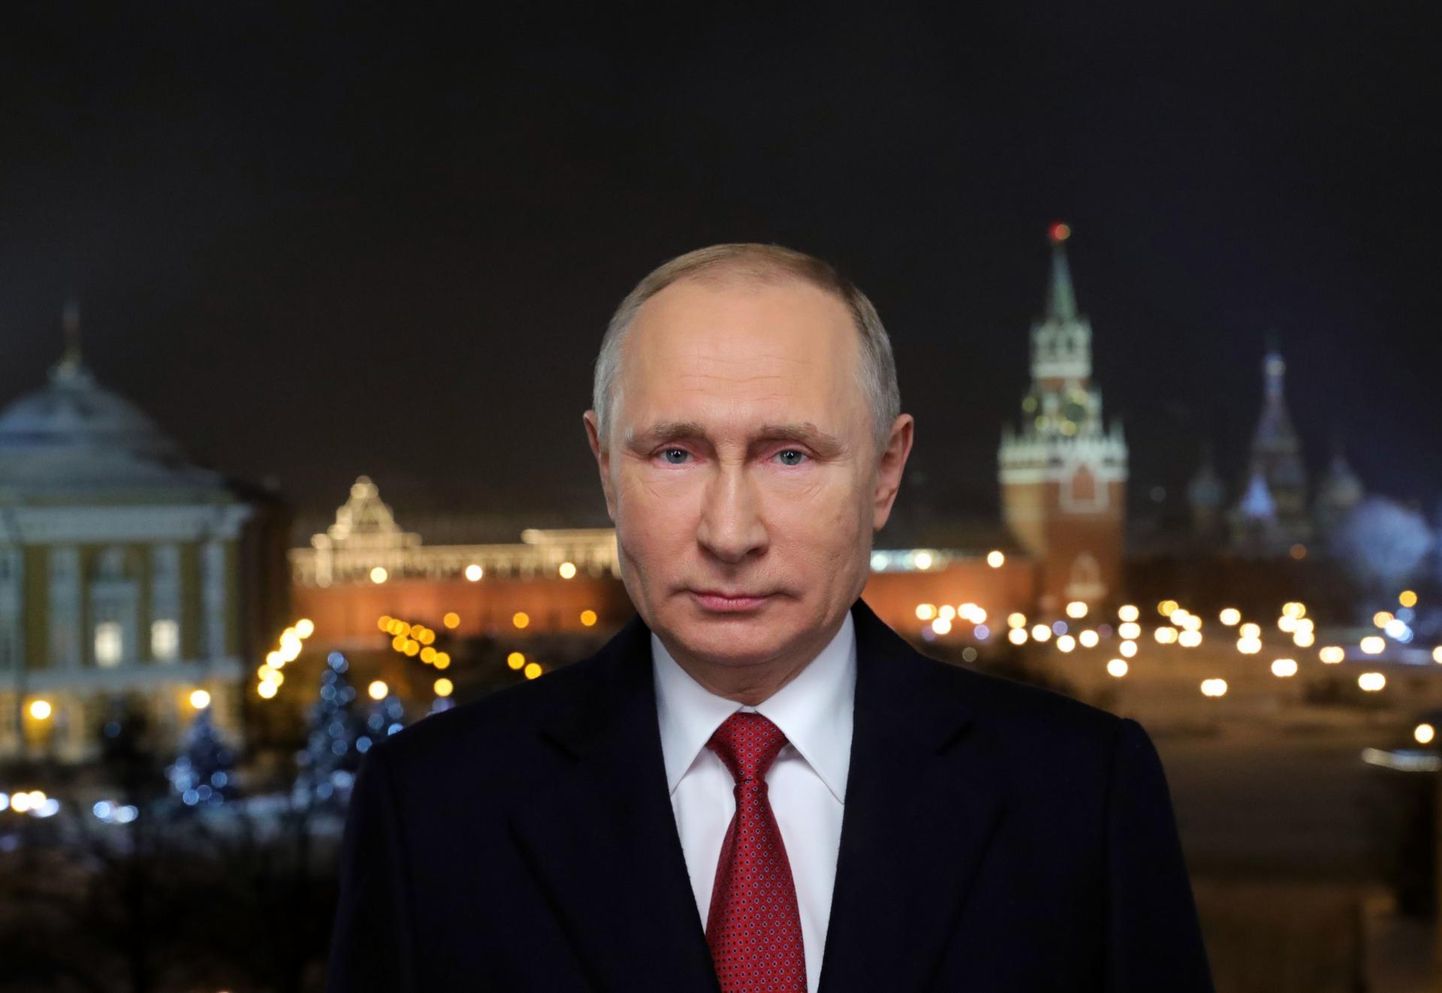 Venemaa president Vladimir Putin peab võitma tagasi usalduse enda, valitsuse ja Ühtse Venemaa vastu, sest vastasel korral riskib Kreml kontrolli kaotamisega võimuülemineku läbiviimisel, arvab Aleksei Tšadajev.